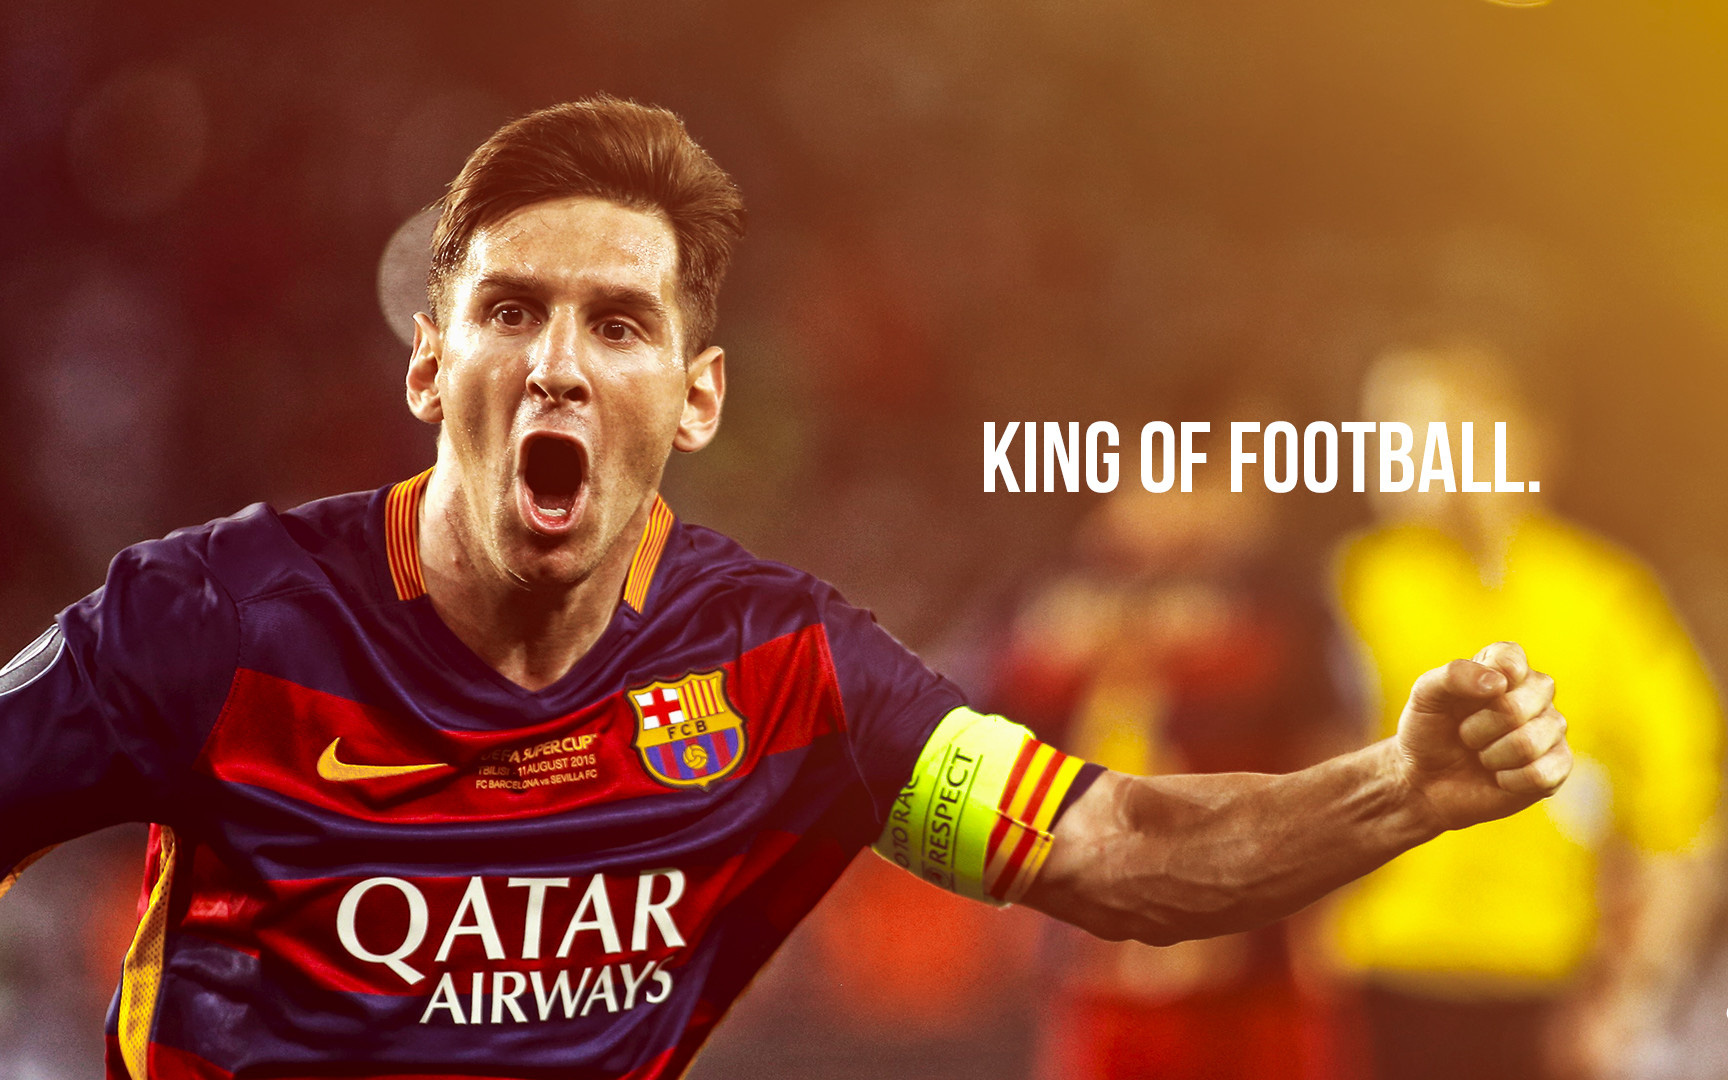 Lionel Messi, kỷ lục, sự nghiệp vĩ đại: Lionel Messi đã vượt qua nhiều kỷ lục của bóng đá và trở thành một trong những cầu thủ xuất sắc nhất mọi thời đại. Hãy xem hình ảnh để có cái nhìn rõ ràng về sự nghiệp vĩ đại của anh.